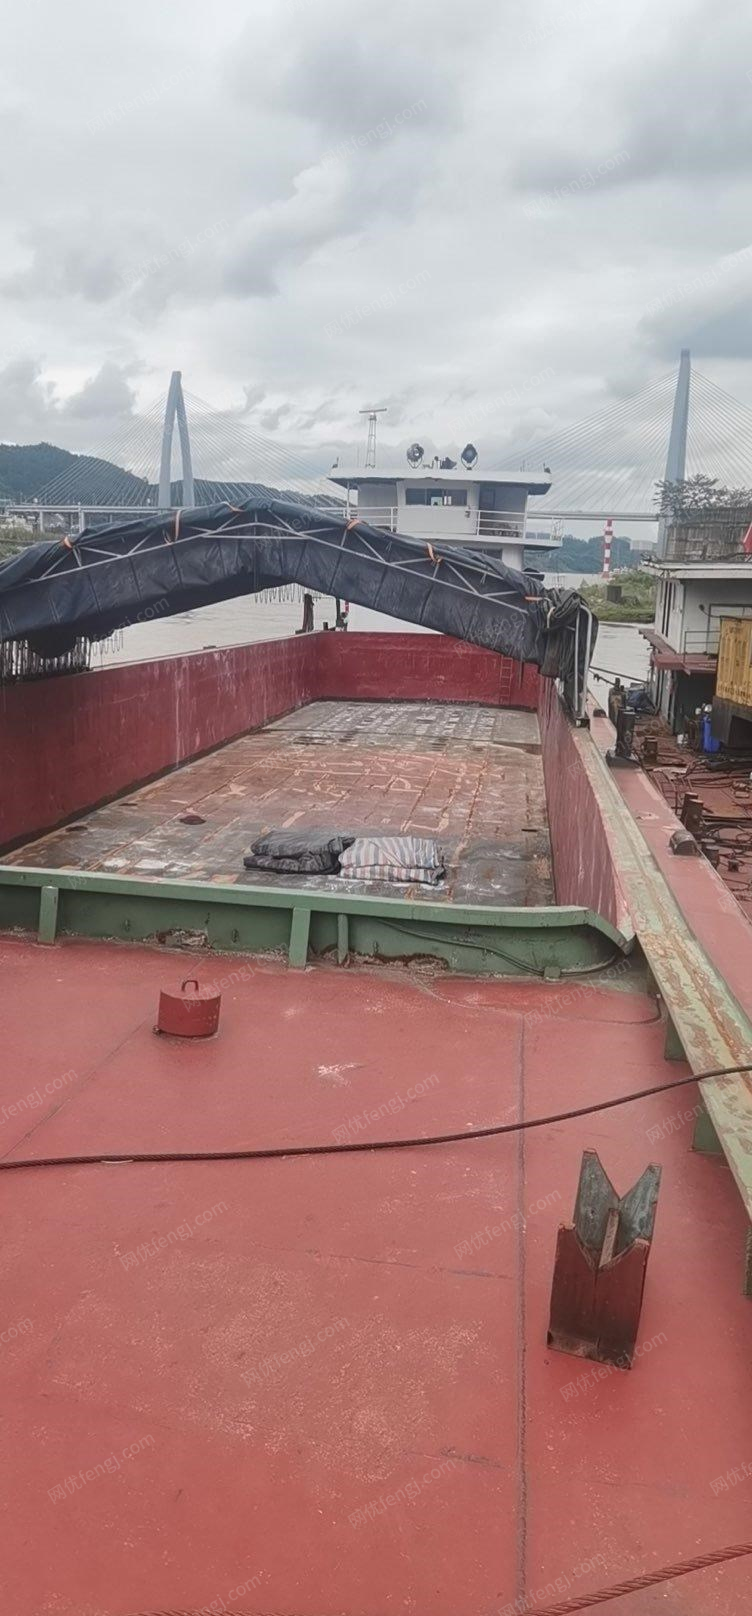 重庆巴南区不用了出售1条1400吨干货船  用了七八年了,能正常用.看货议价.